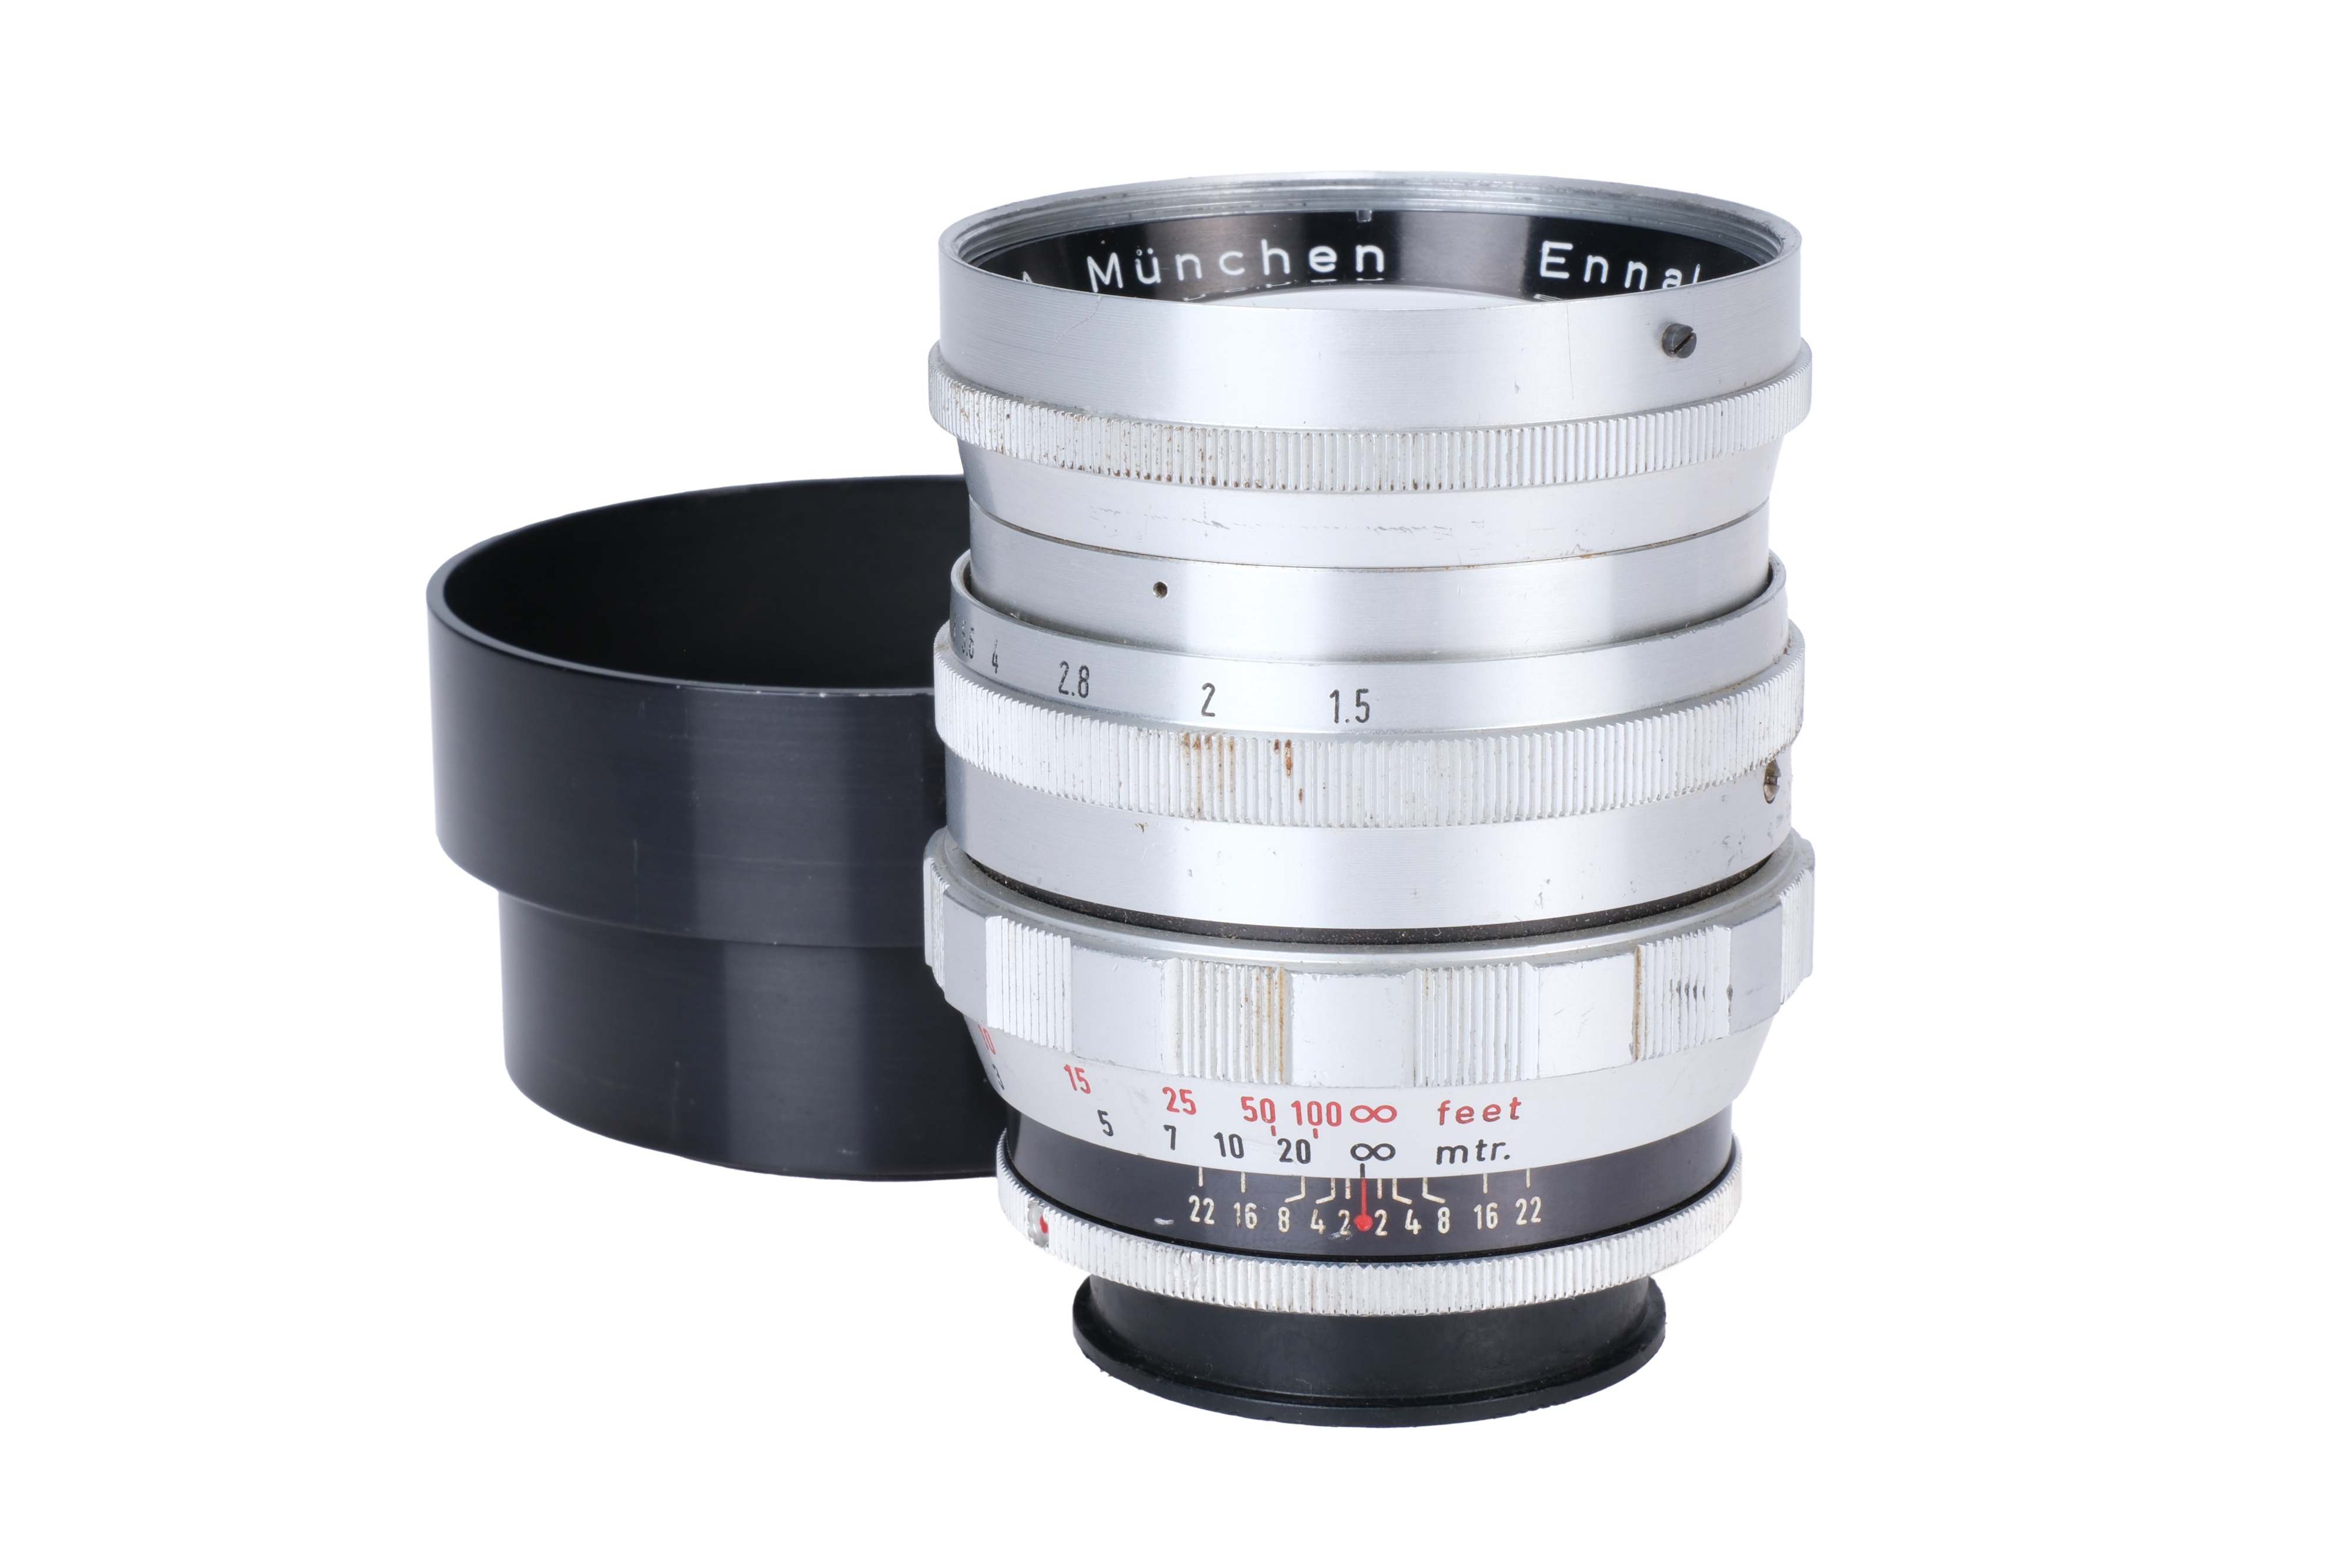 An Enna Munchen Ennalyt f/1.5 85mm Lens,